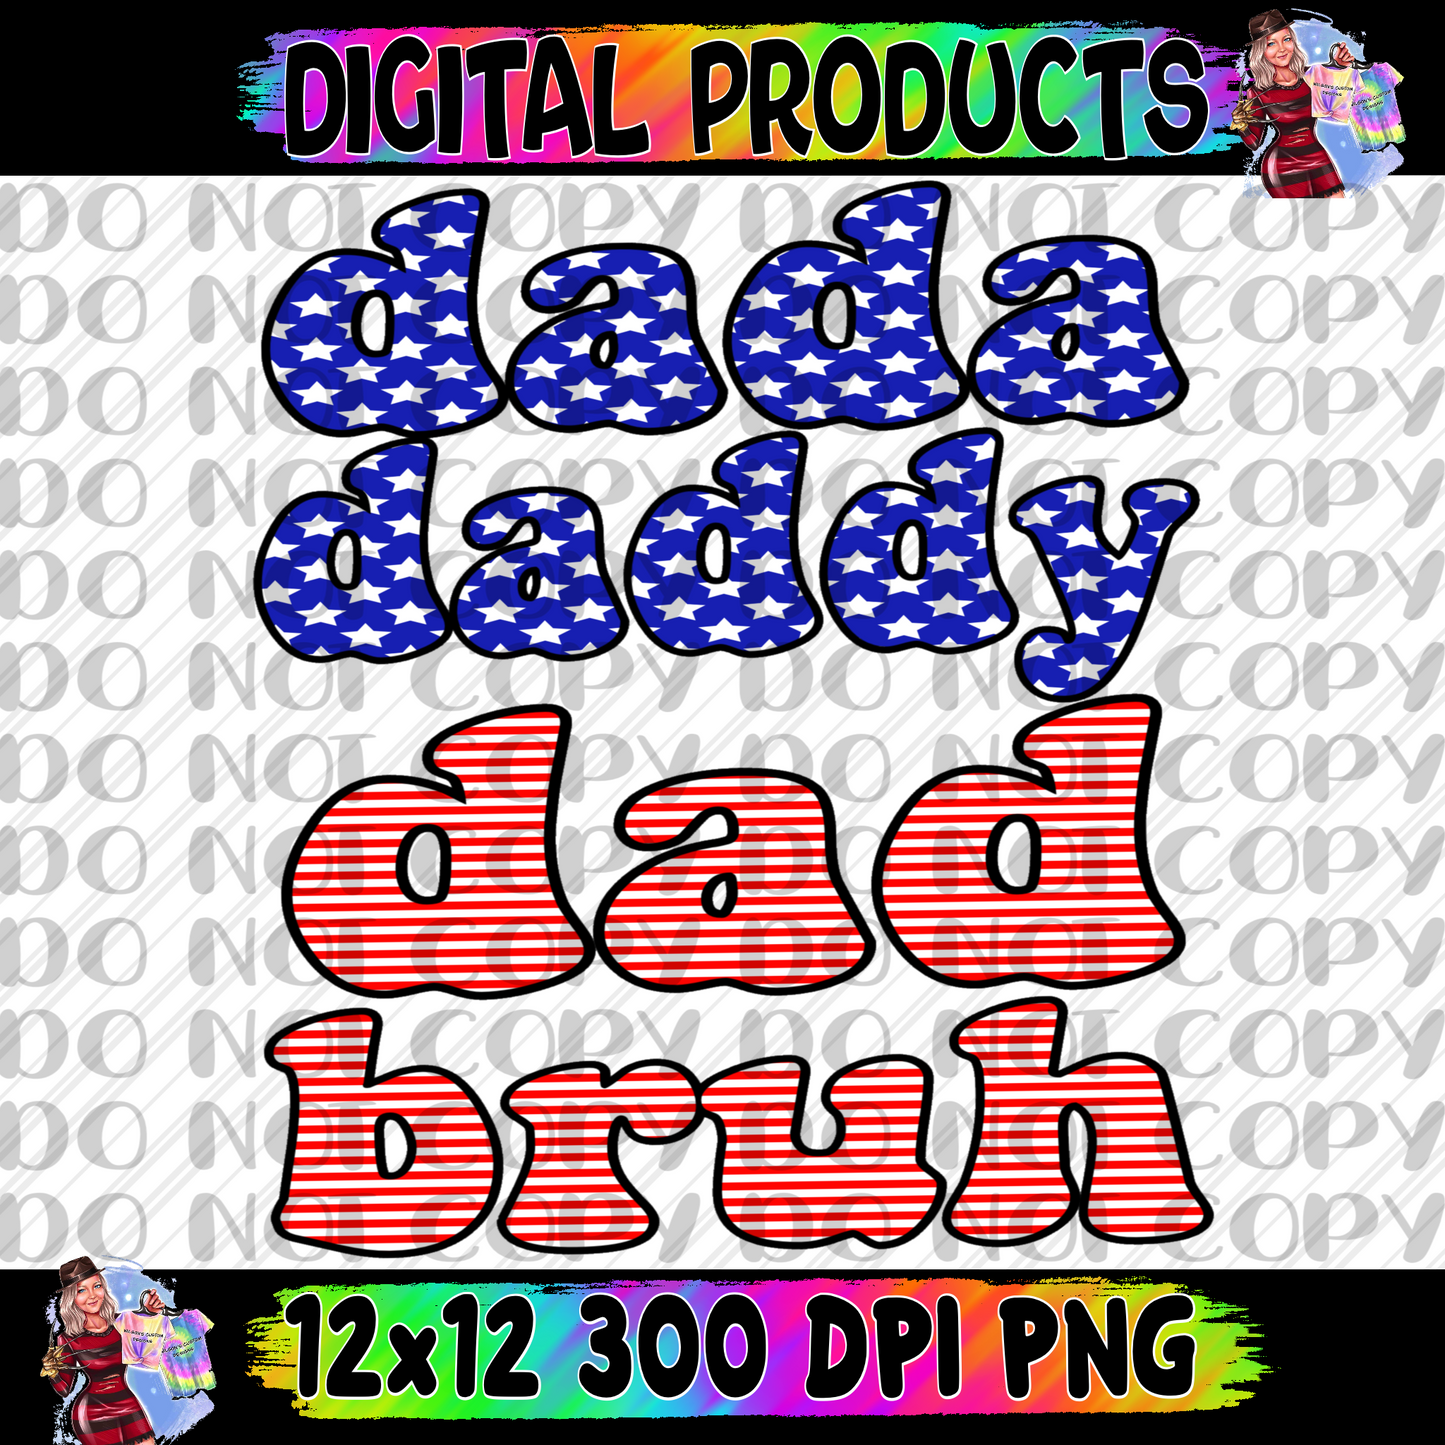 Dad daddy dad bruh